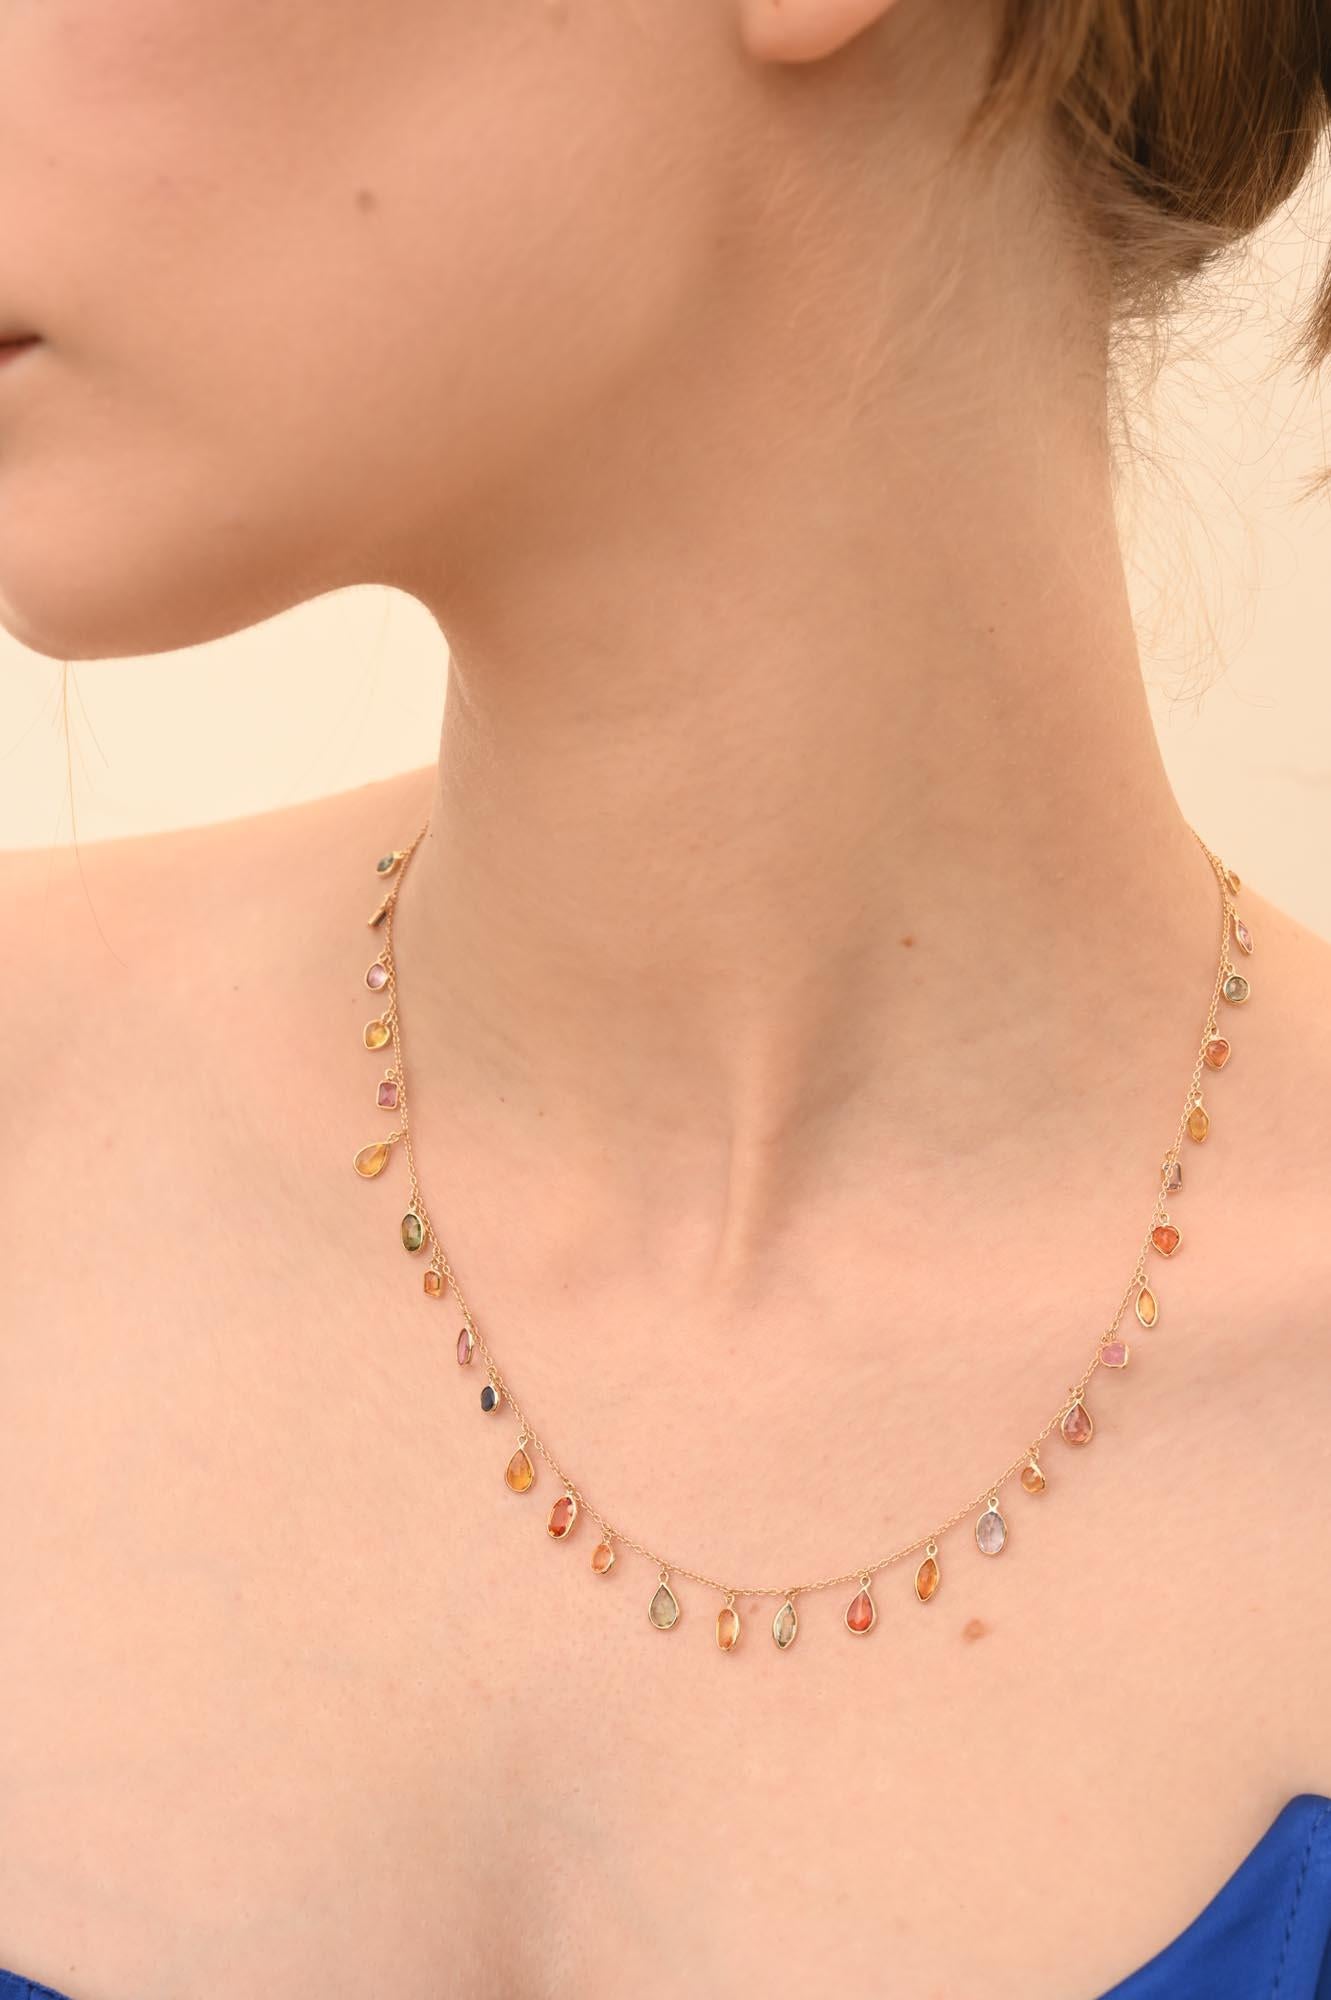 Bunte Multi Sapphire Chain Necklace mit Saphiren besetzt in 18K Gold. Dieses atemberaubende Schmuckstück wertet einen Freizeitlook oder ein elegantes Outfit sofort auf. 
Smaragd steigert die intellektuellen Fähigkeiten. 
Das Design mit ungleichmäßig